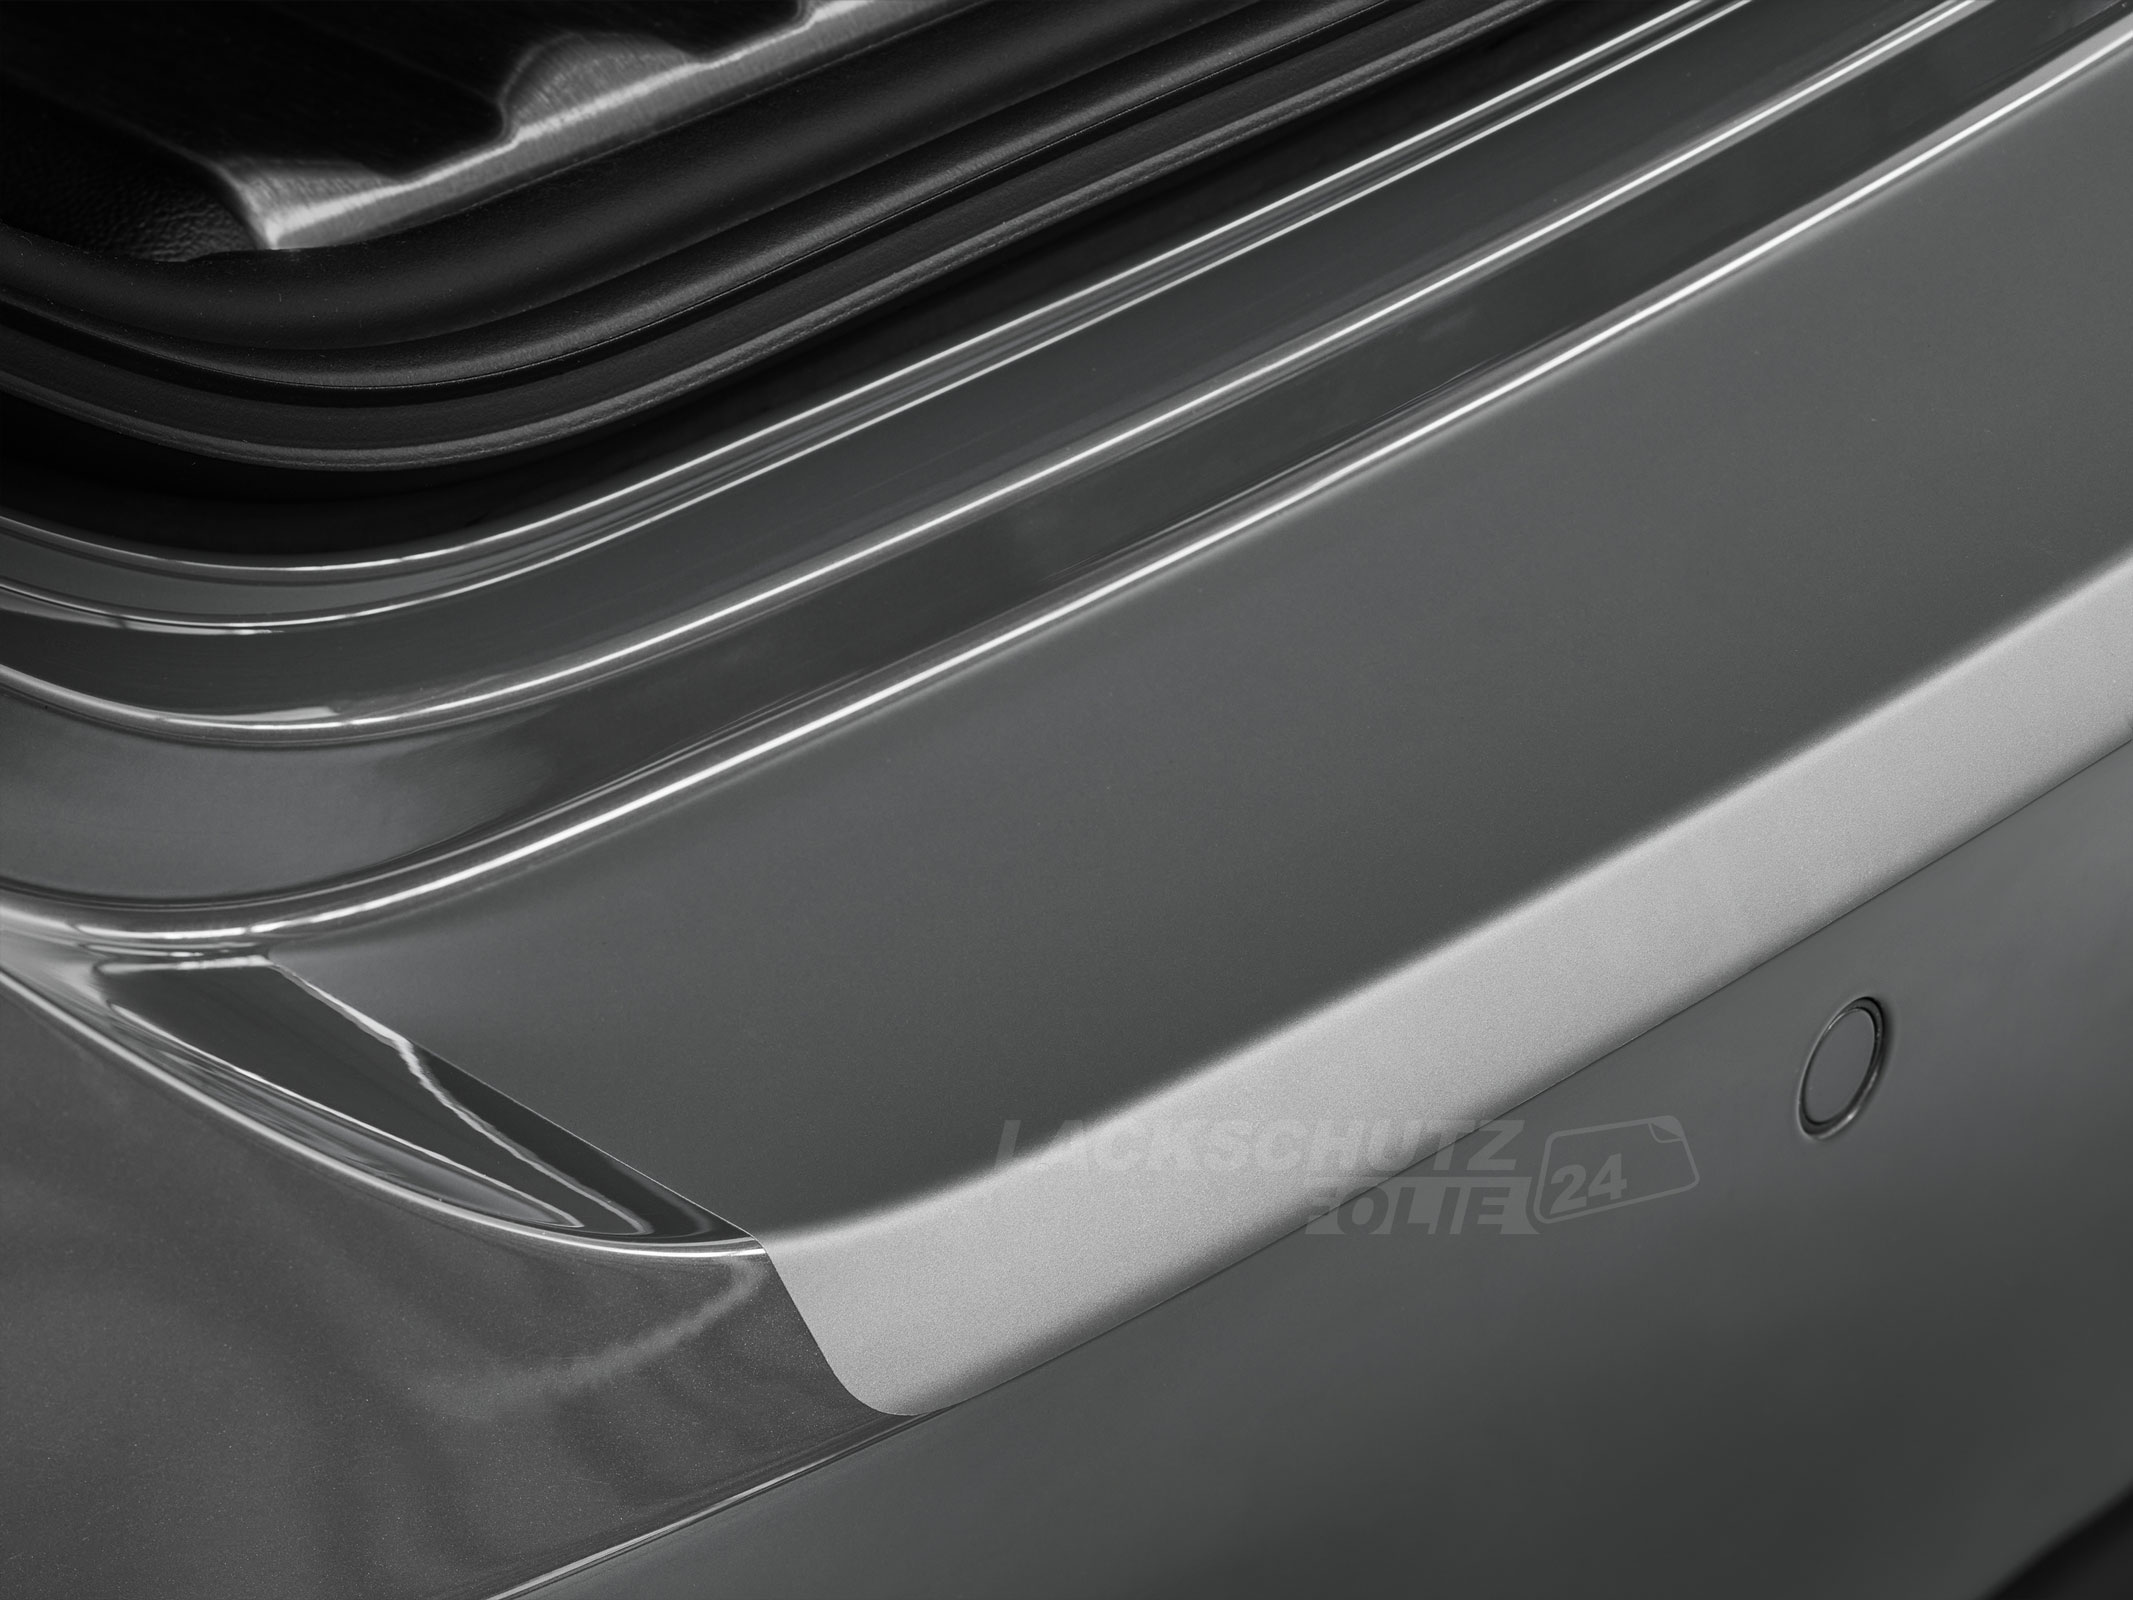 Ladekantenschutzfolie - Transparent Glatt MATT 110 µm stark  für Peugeot 508 RXH BJ 2011 - 09/2014